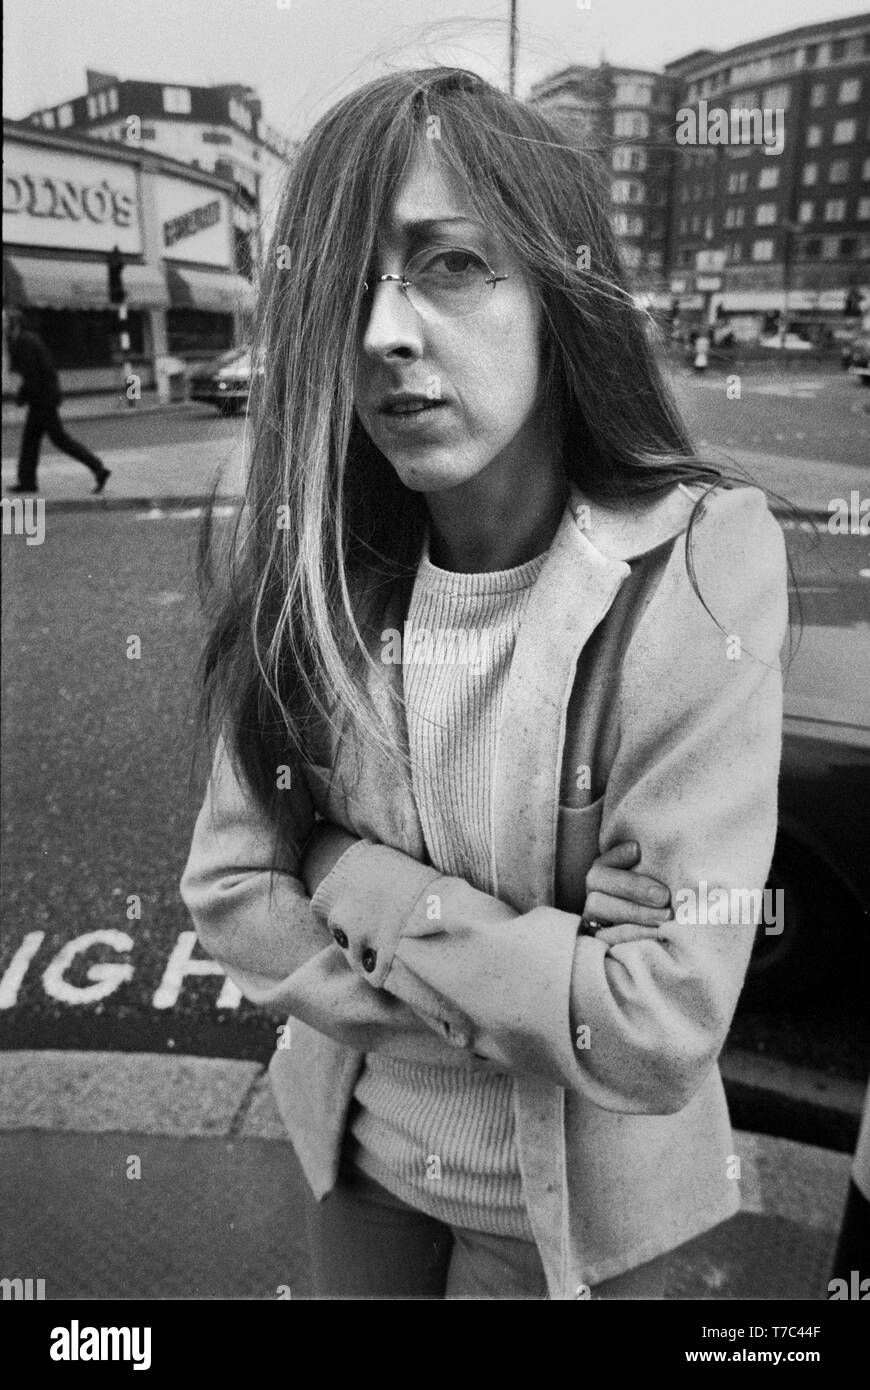 Londres: Judee Sill planteados en Londres en 1972 en una gira para promocionar su segundo álbum, corazón alimentos (Foto por Gijsbert Hanekroot) Foto de stock